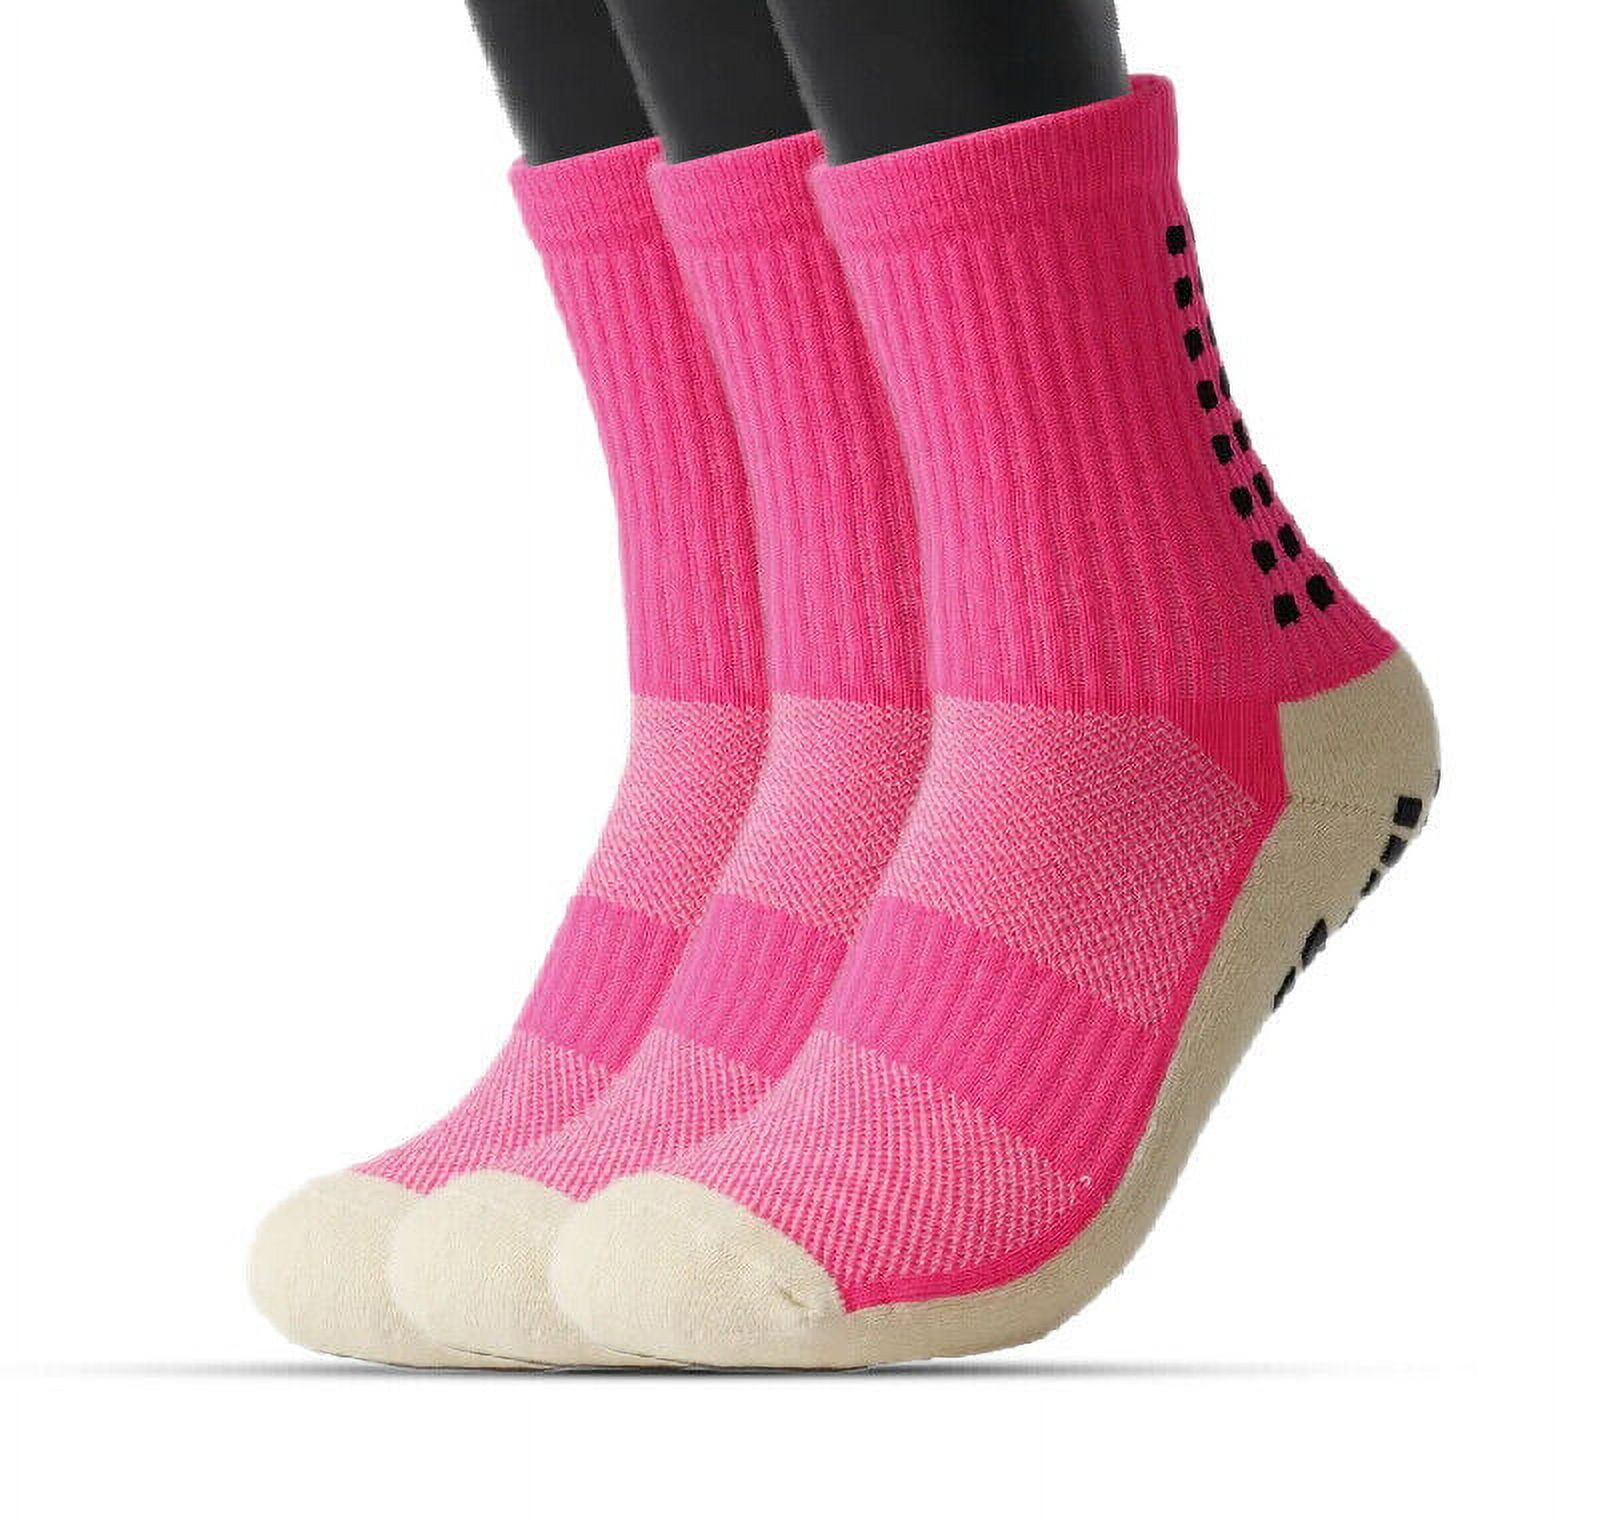 3 Pairs Non-slip Soccer Socks Men Women Breathable Anti Blisters